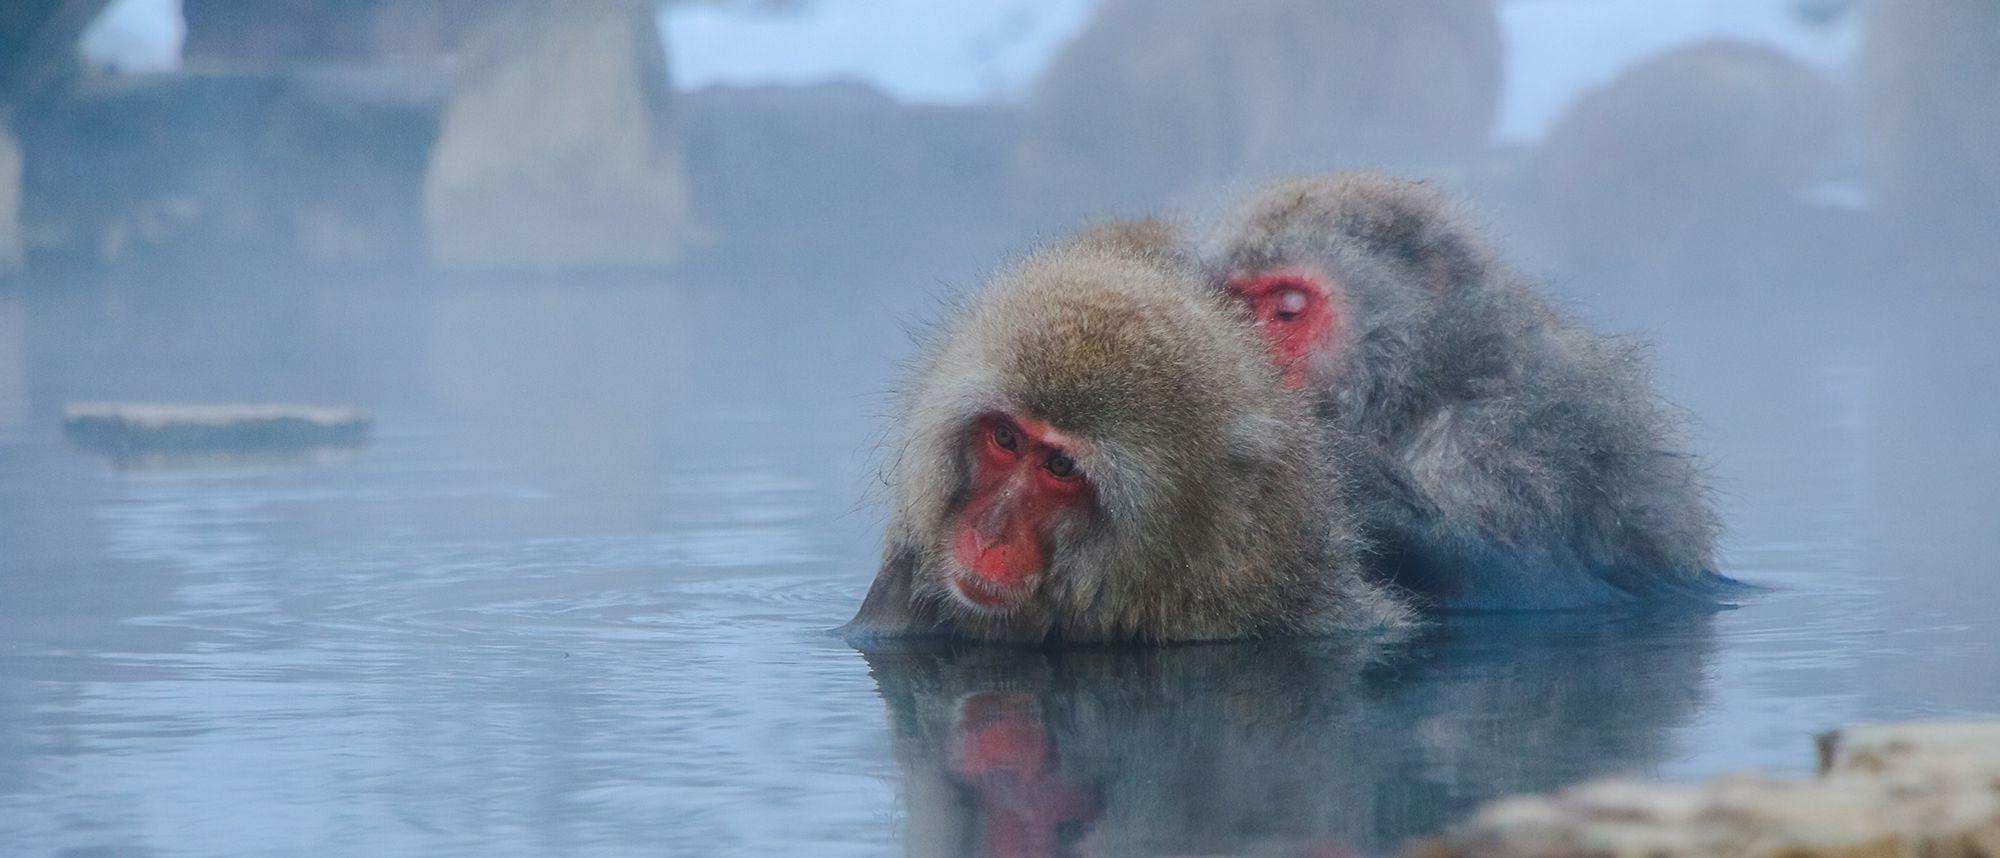 Two Japanese macaque taking a bath in Nagawa, Nagano